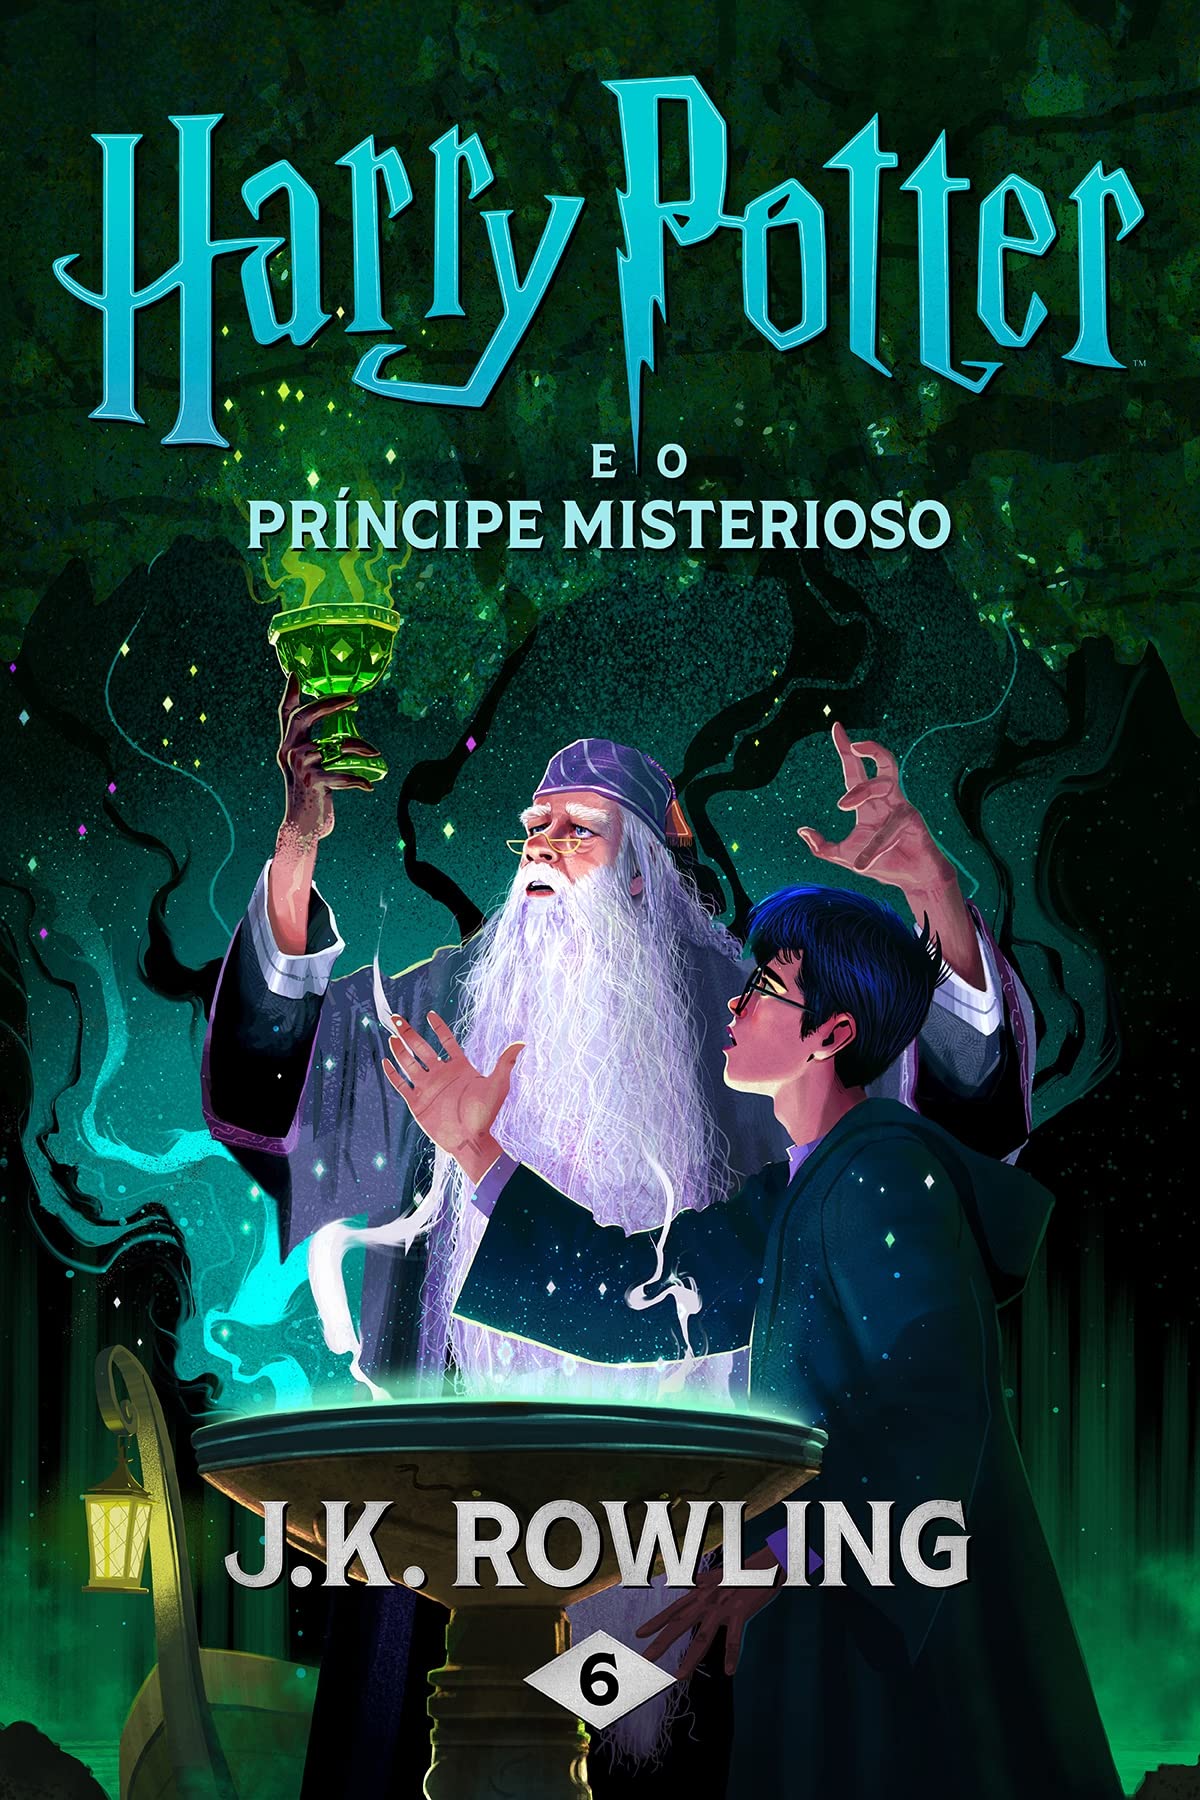 Harry Potter e o Príncipe Misterioso (Portuguese Edition)